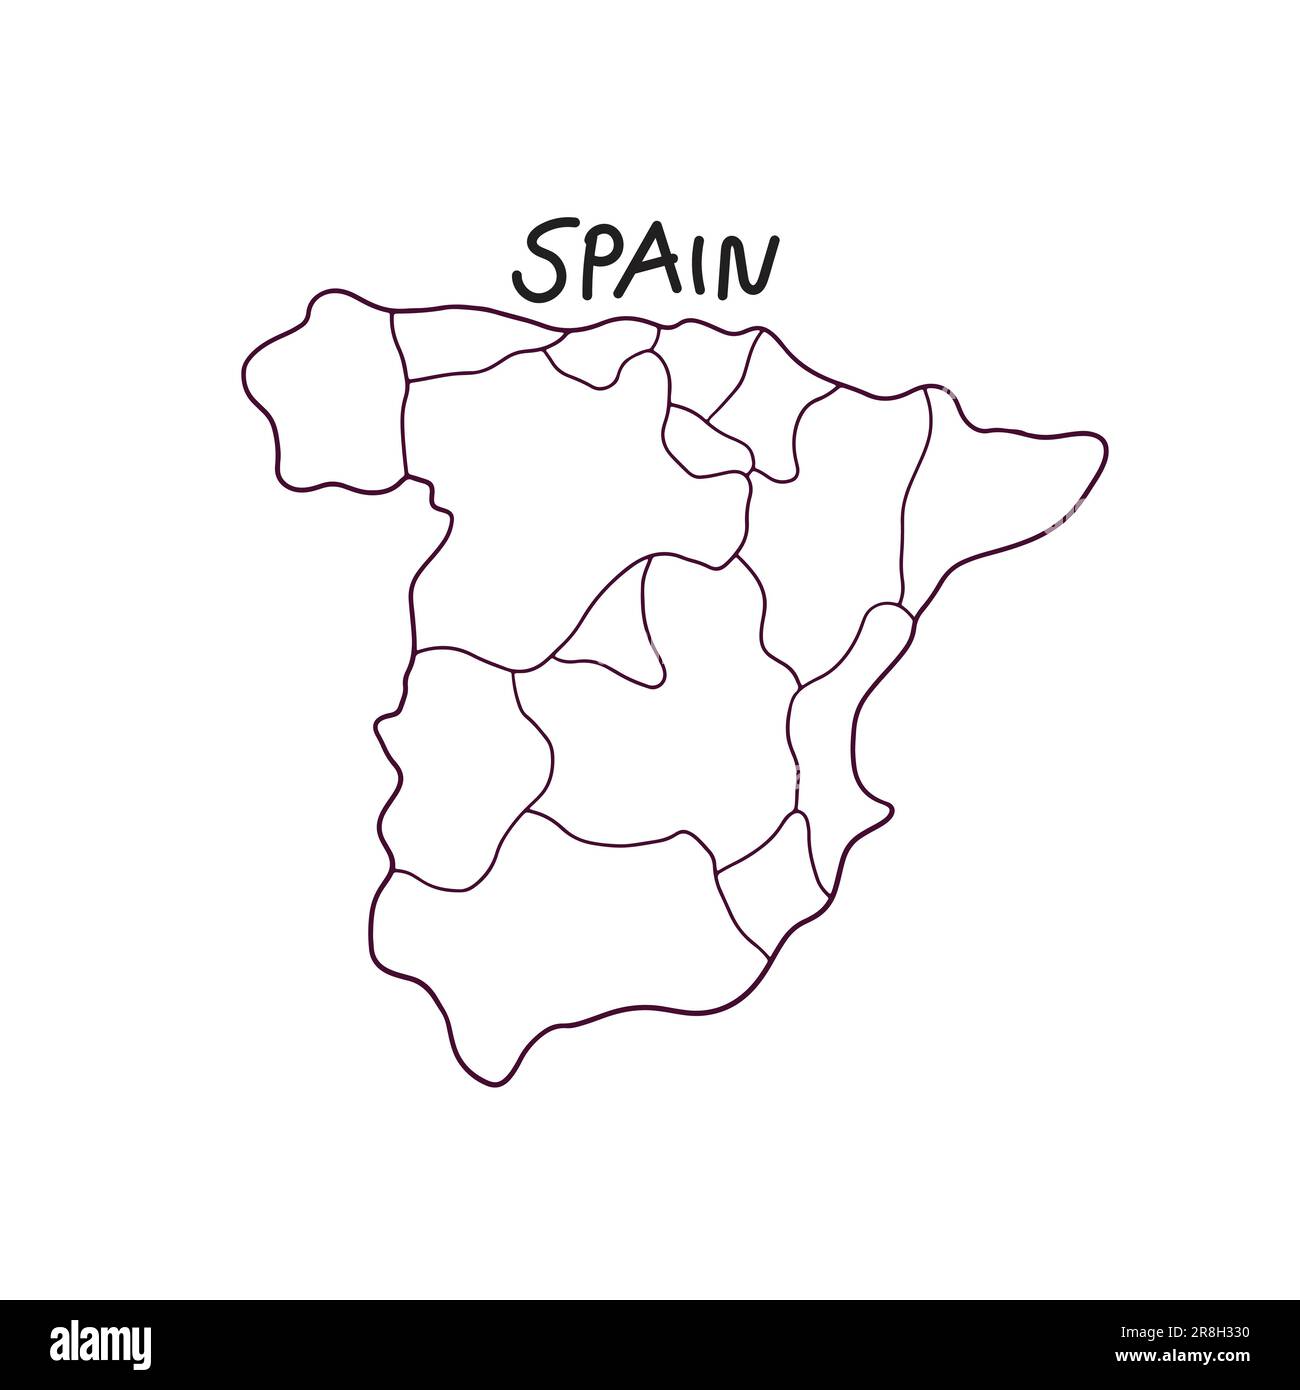 Handgezeichnete Landkarte Spaniens Stock Vektor